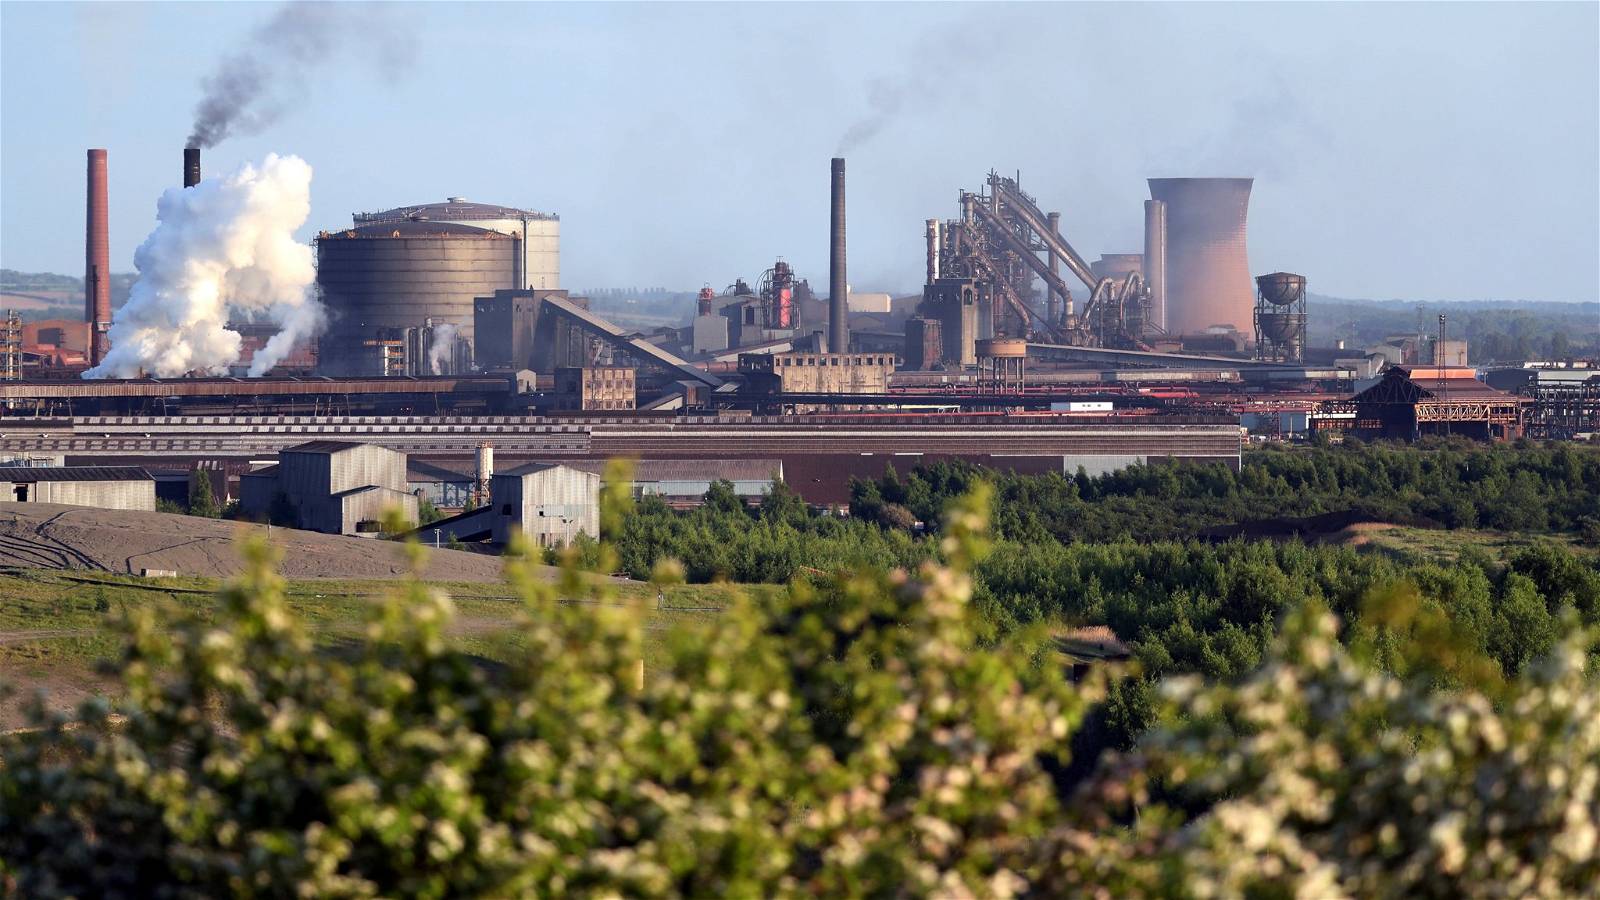 UK Steel: Birleşik Krallık enerji politikasının hızlandırılması gerekiyor